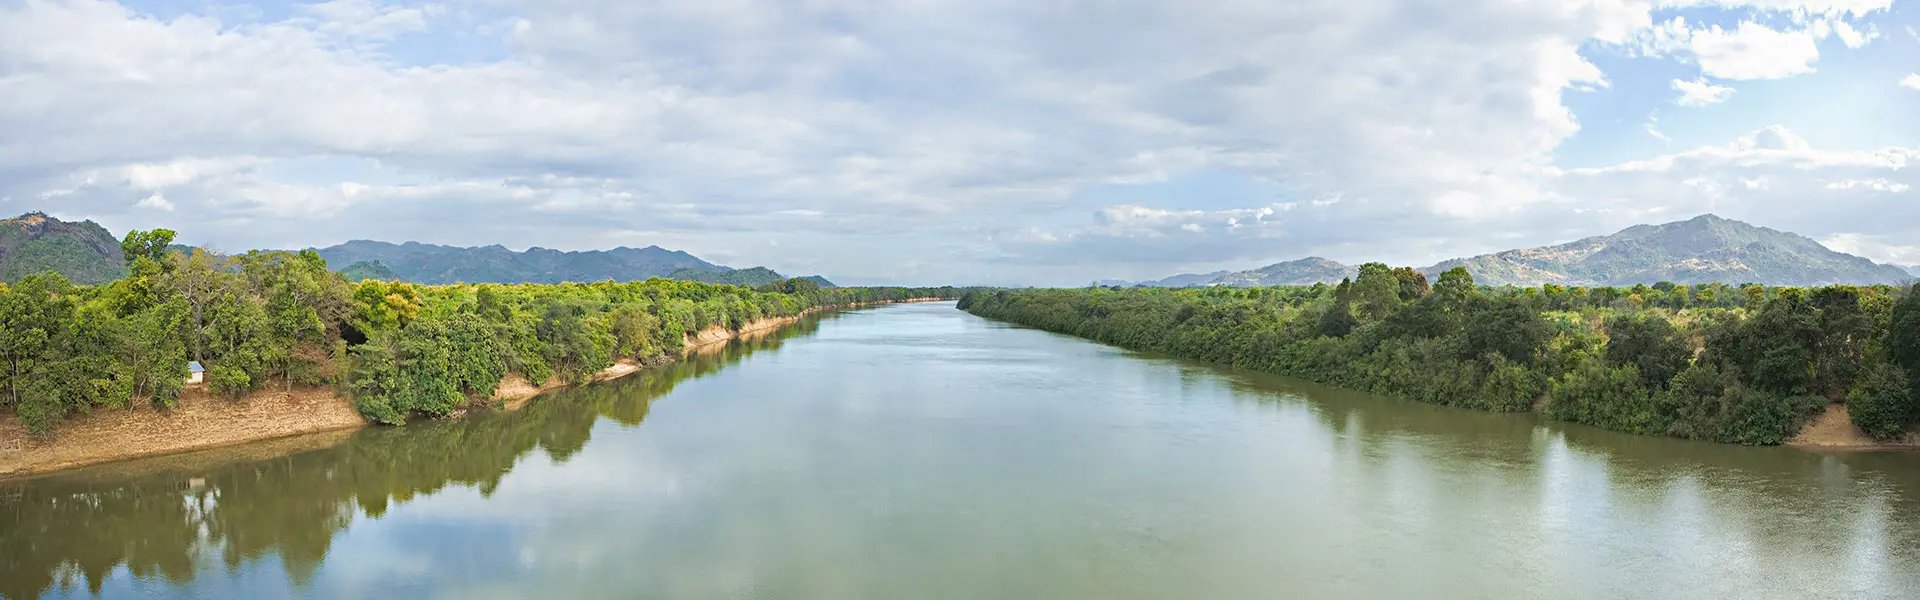 River in Venezuela